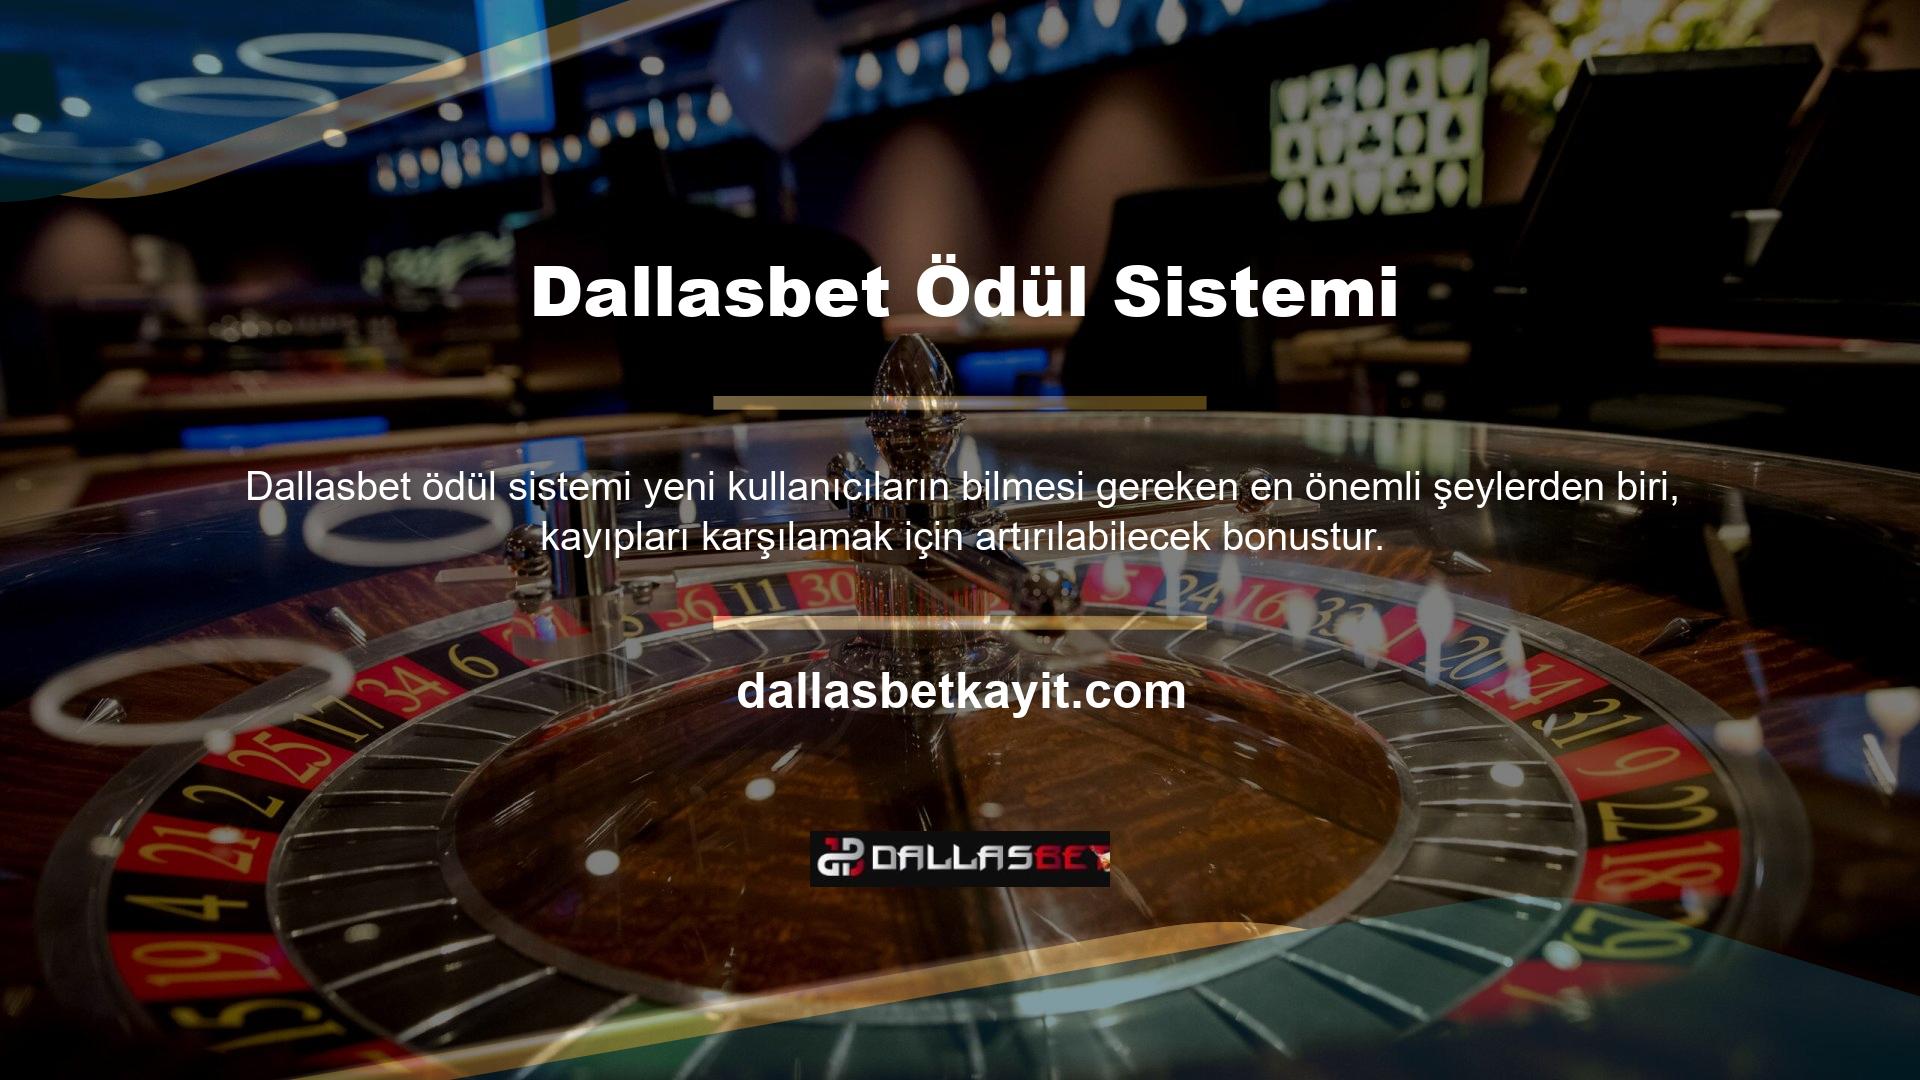 Tüm bu bilgilere dayanarak casino ortamına yeni başlayanlar Dallasbet web sitesinin canlı destek birimine giriş yaparak detaylı bonus bilgileri edinebilirler